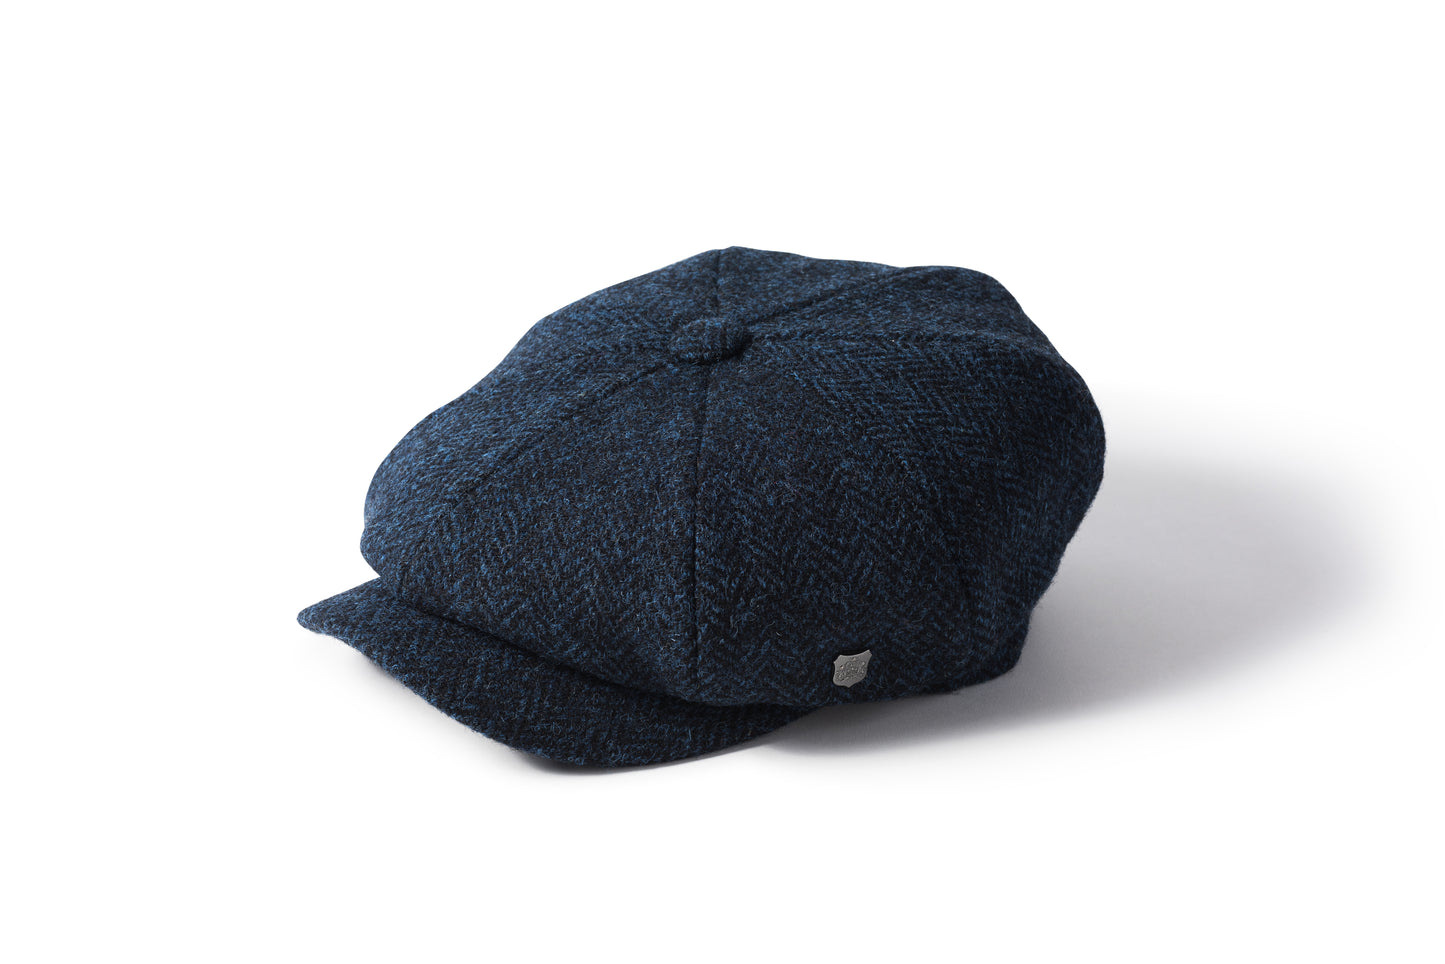 Harris Tweed Baker Boy Cap - Carloway Blue 3302